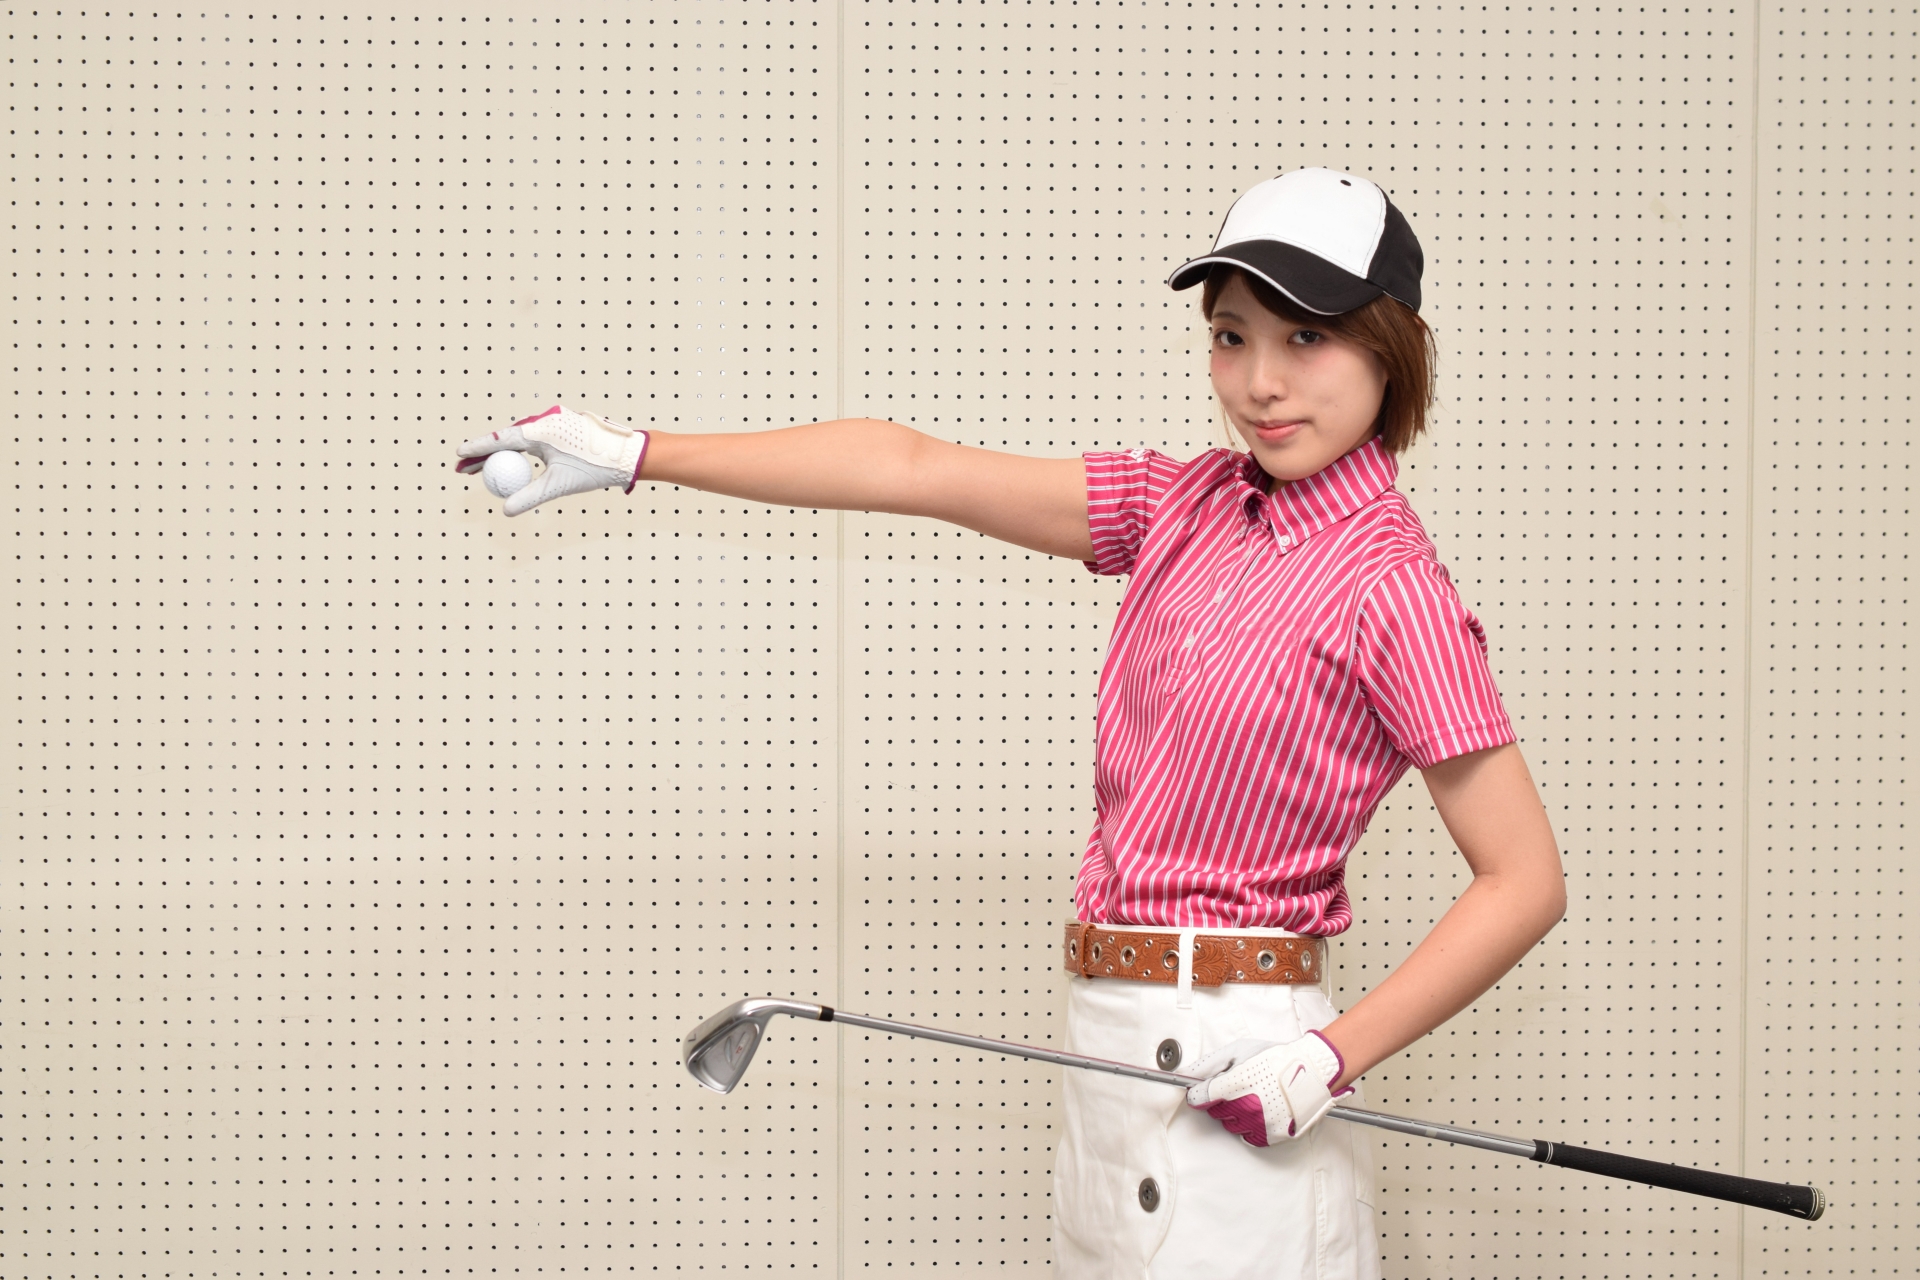 ゴルフ初心者女性はコースデビュー前にスコア目標を立ててみよう Golfantasta